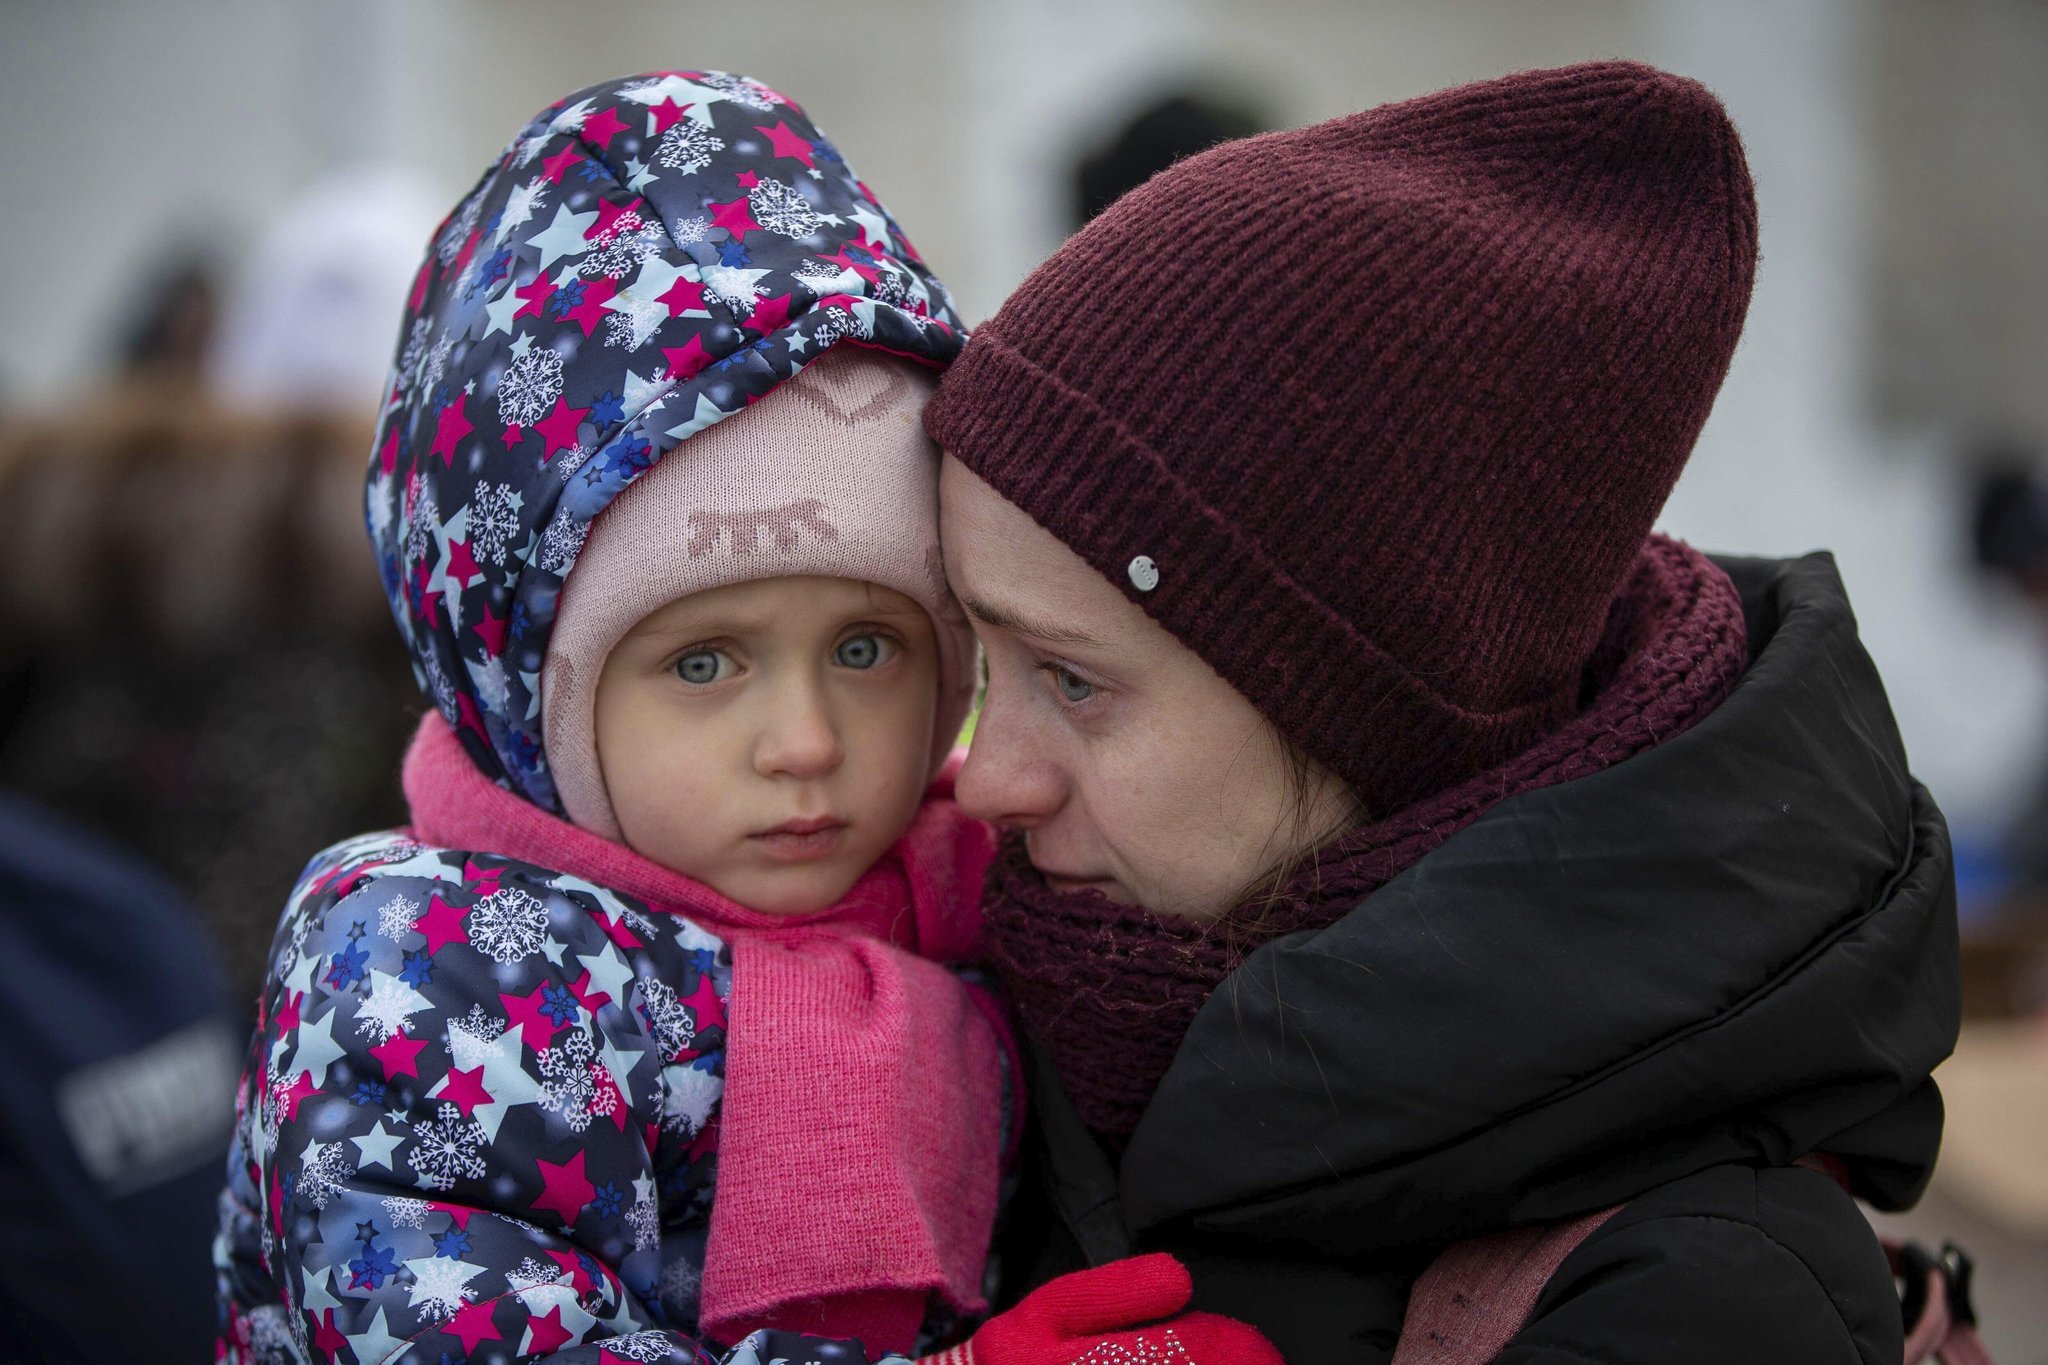 Ukraine aid appeal raises £120m in just five days